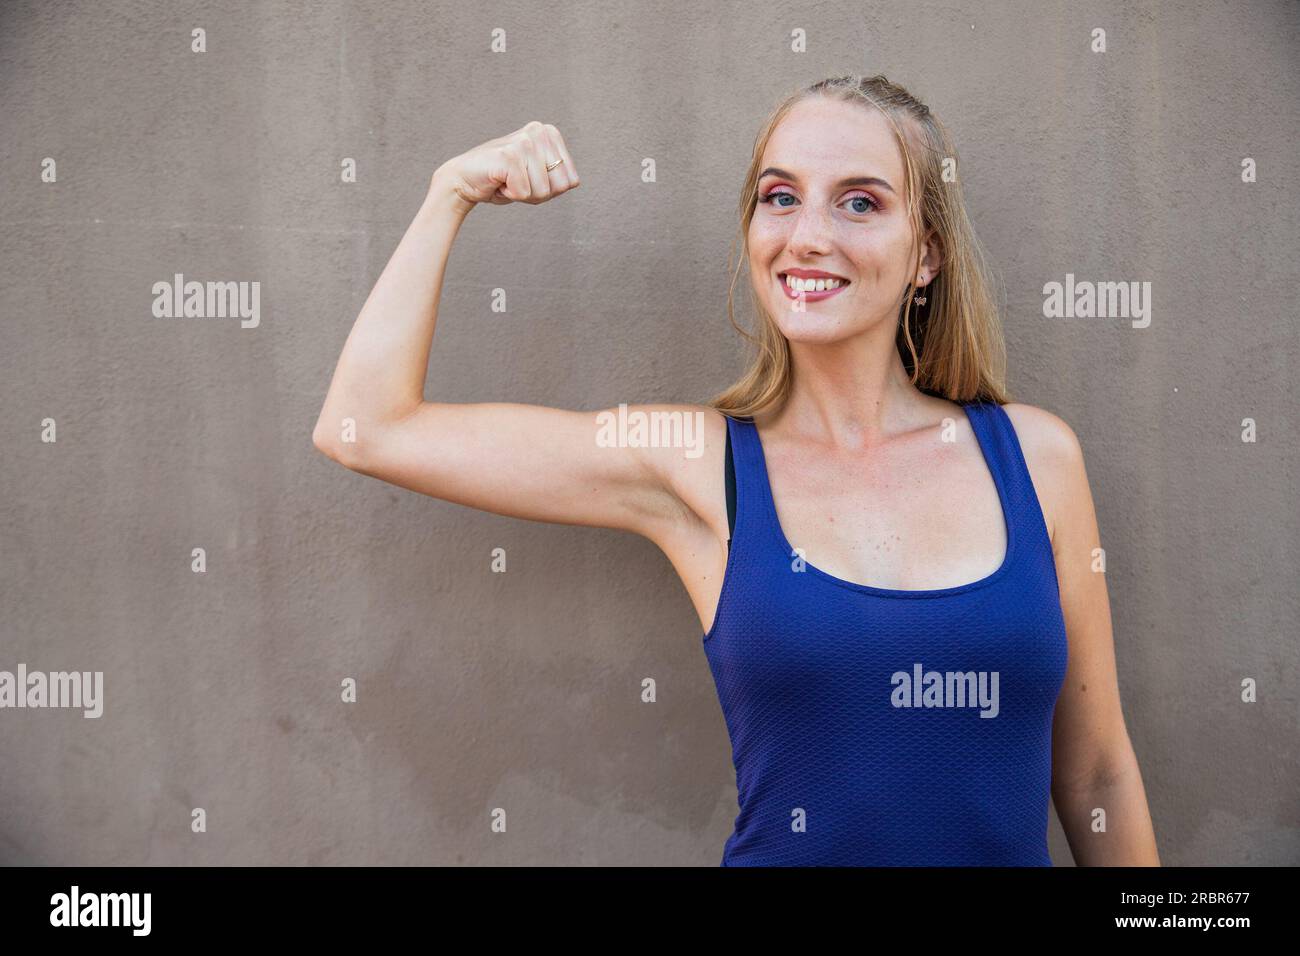 Una mujer joven con su bíceps elevado, concepto de fuerza, modelo aislado en un fondo gris Foto de stock